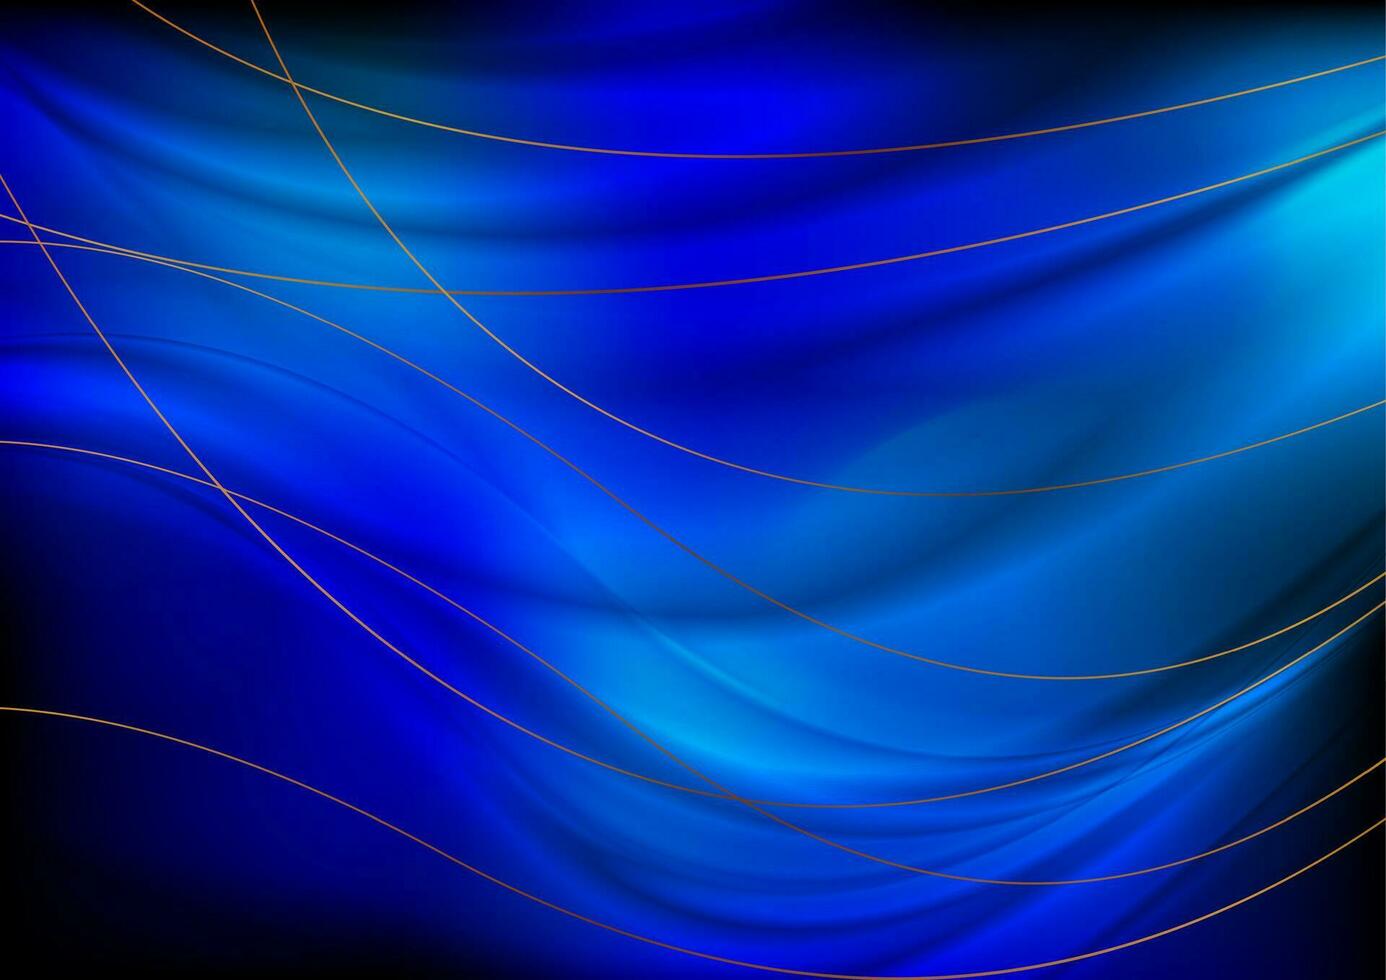 dunkel Blau glatt Wellen mit gebogen Bronze- Linien vektor